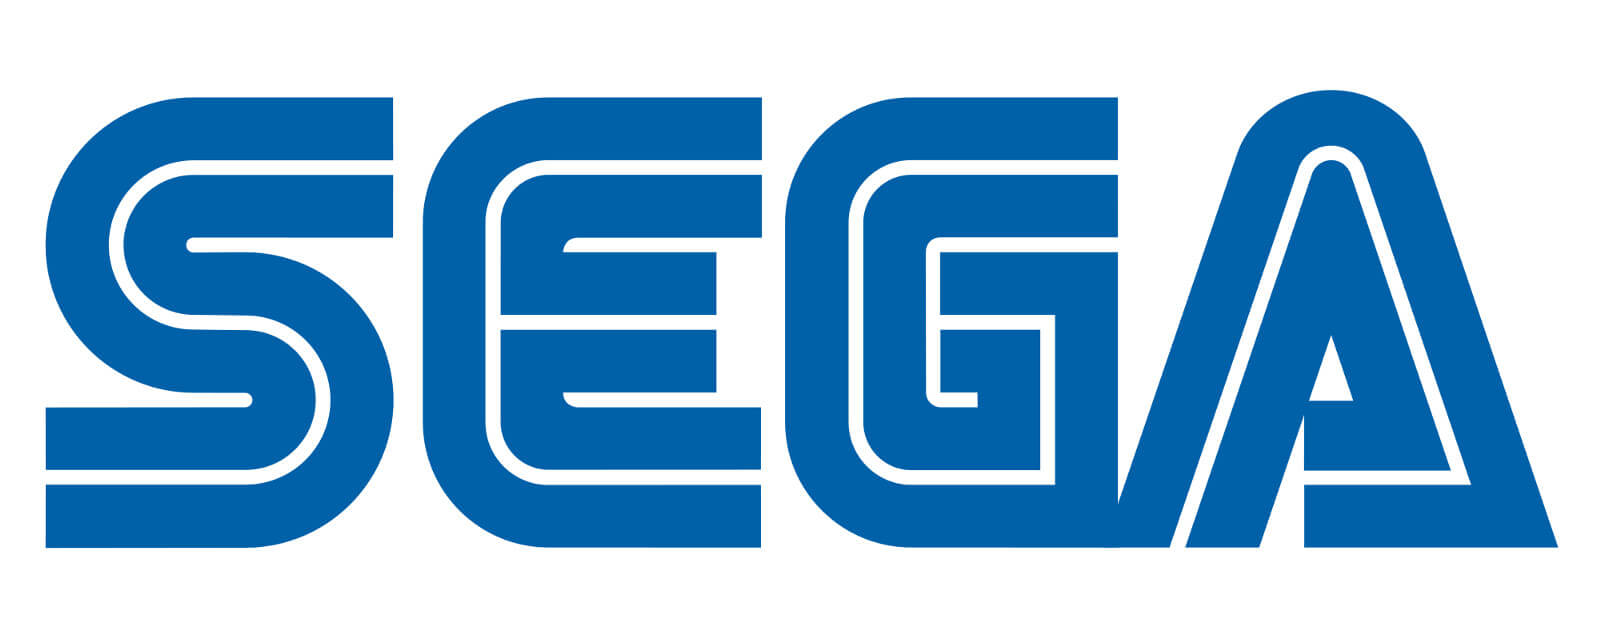 Logo da Sega